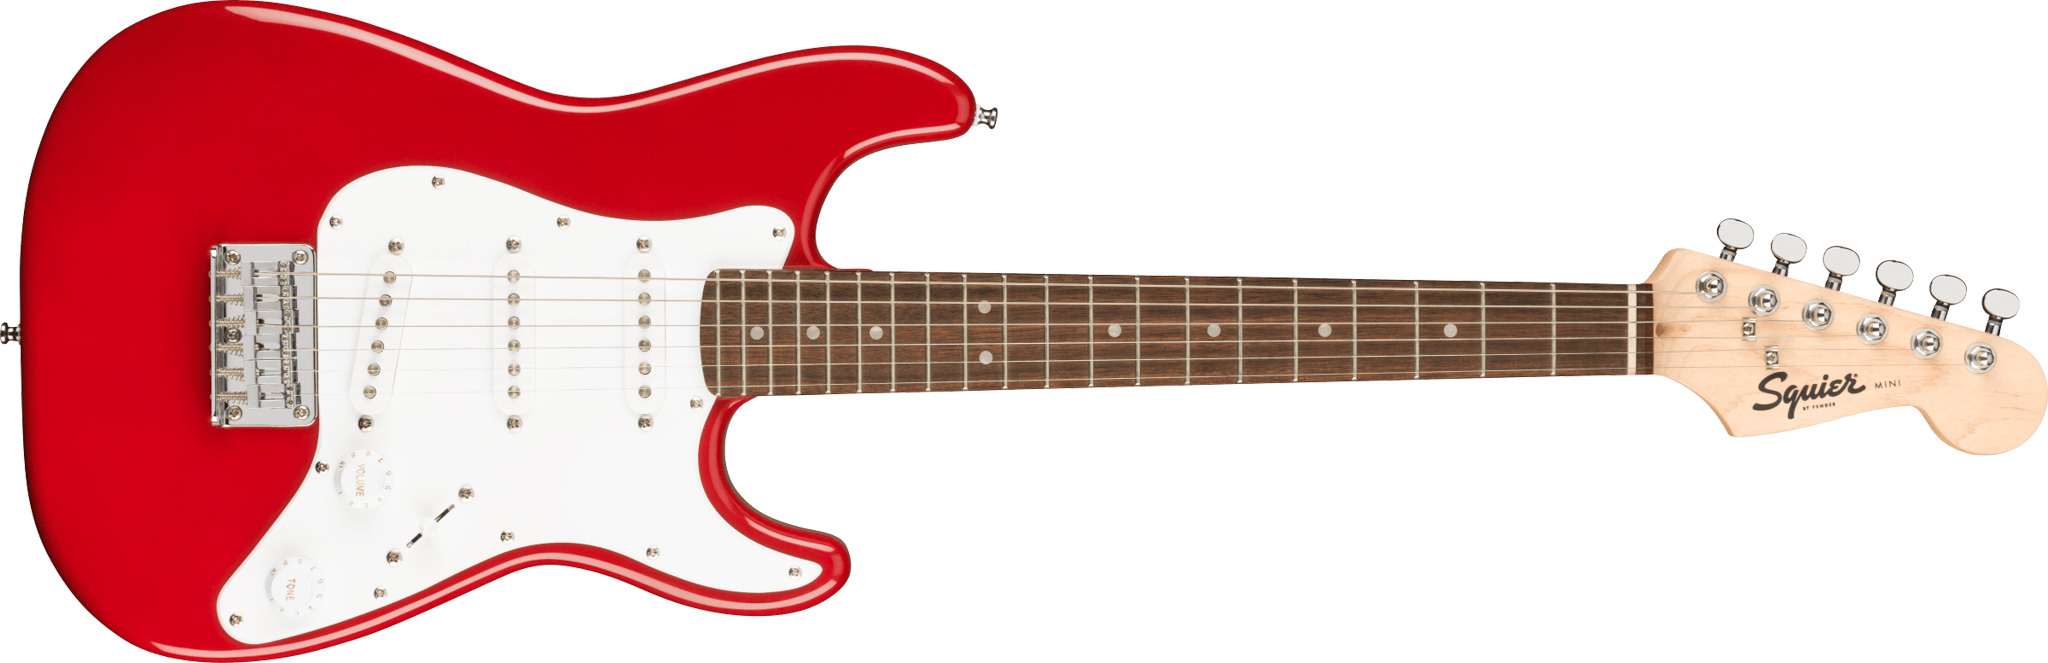 Billede af Fender Squier Mini Stratocaster El-guitar (Dakota Red)